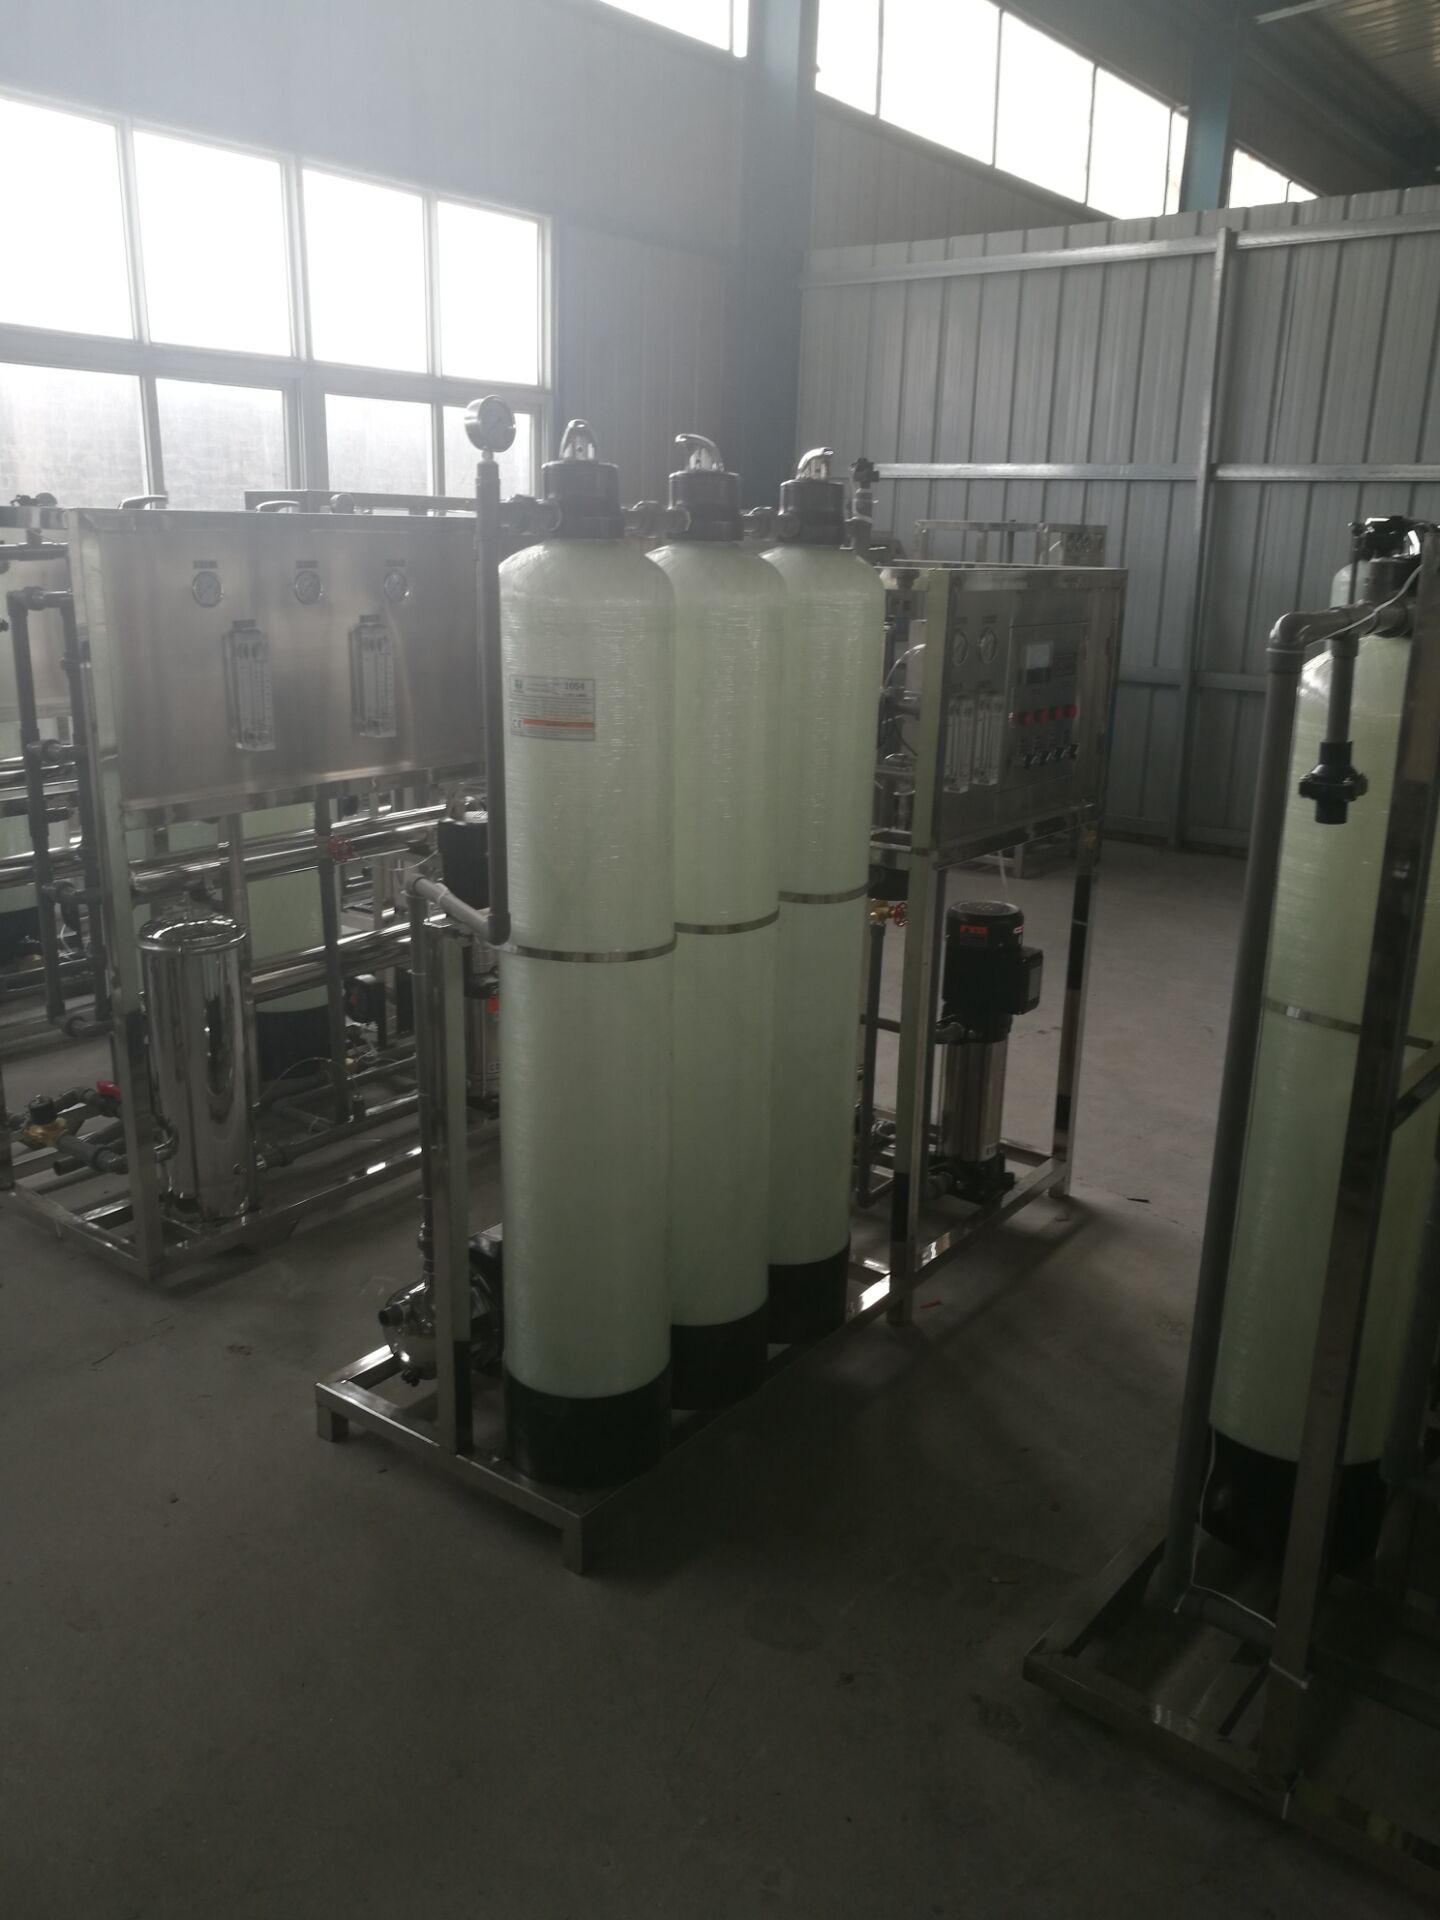 内蒙古水处理设备· 广西饮料生产线设备 西藏灌装设备